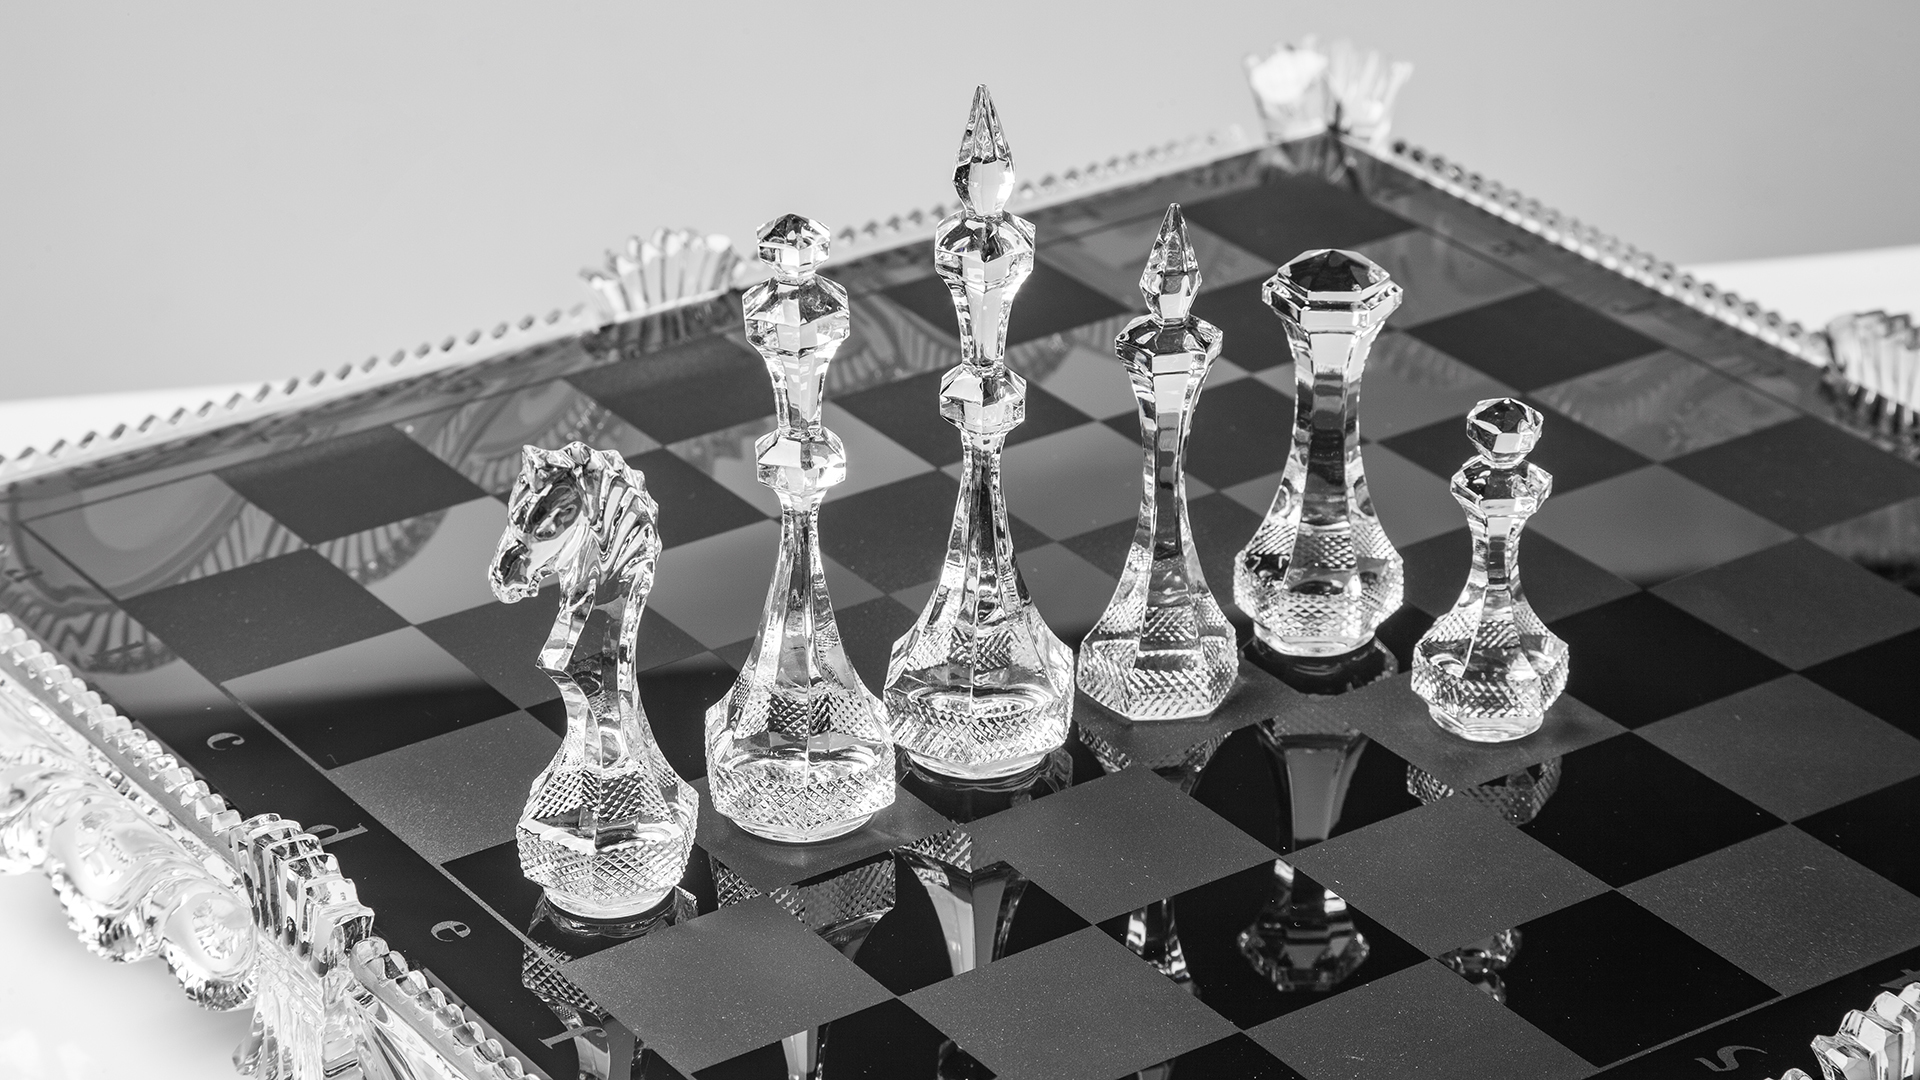 Композиция Avdeev Crystal Хрустальные шахматы 42,5х20 см, хрусталь